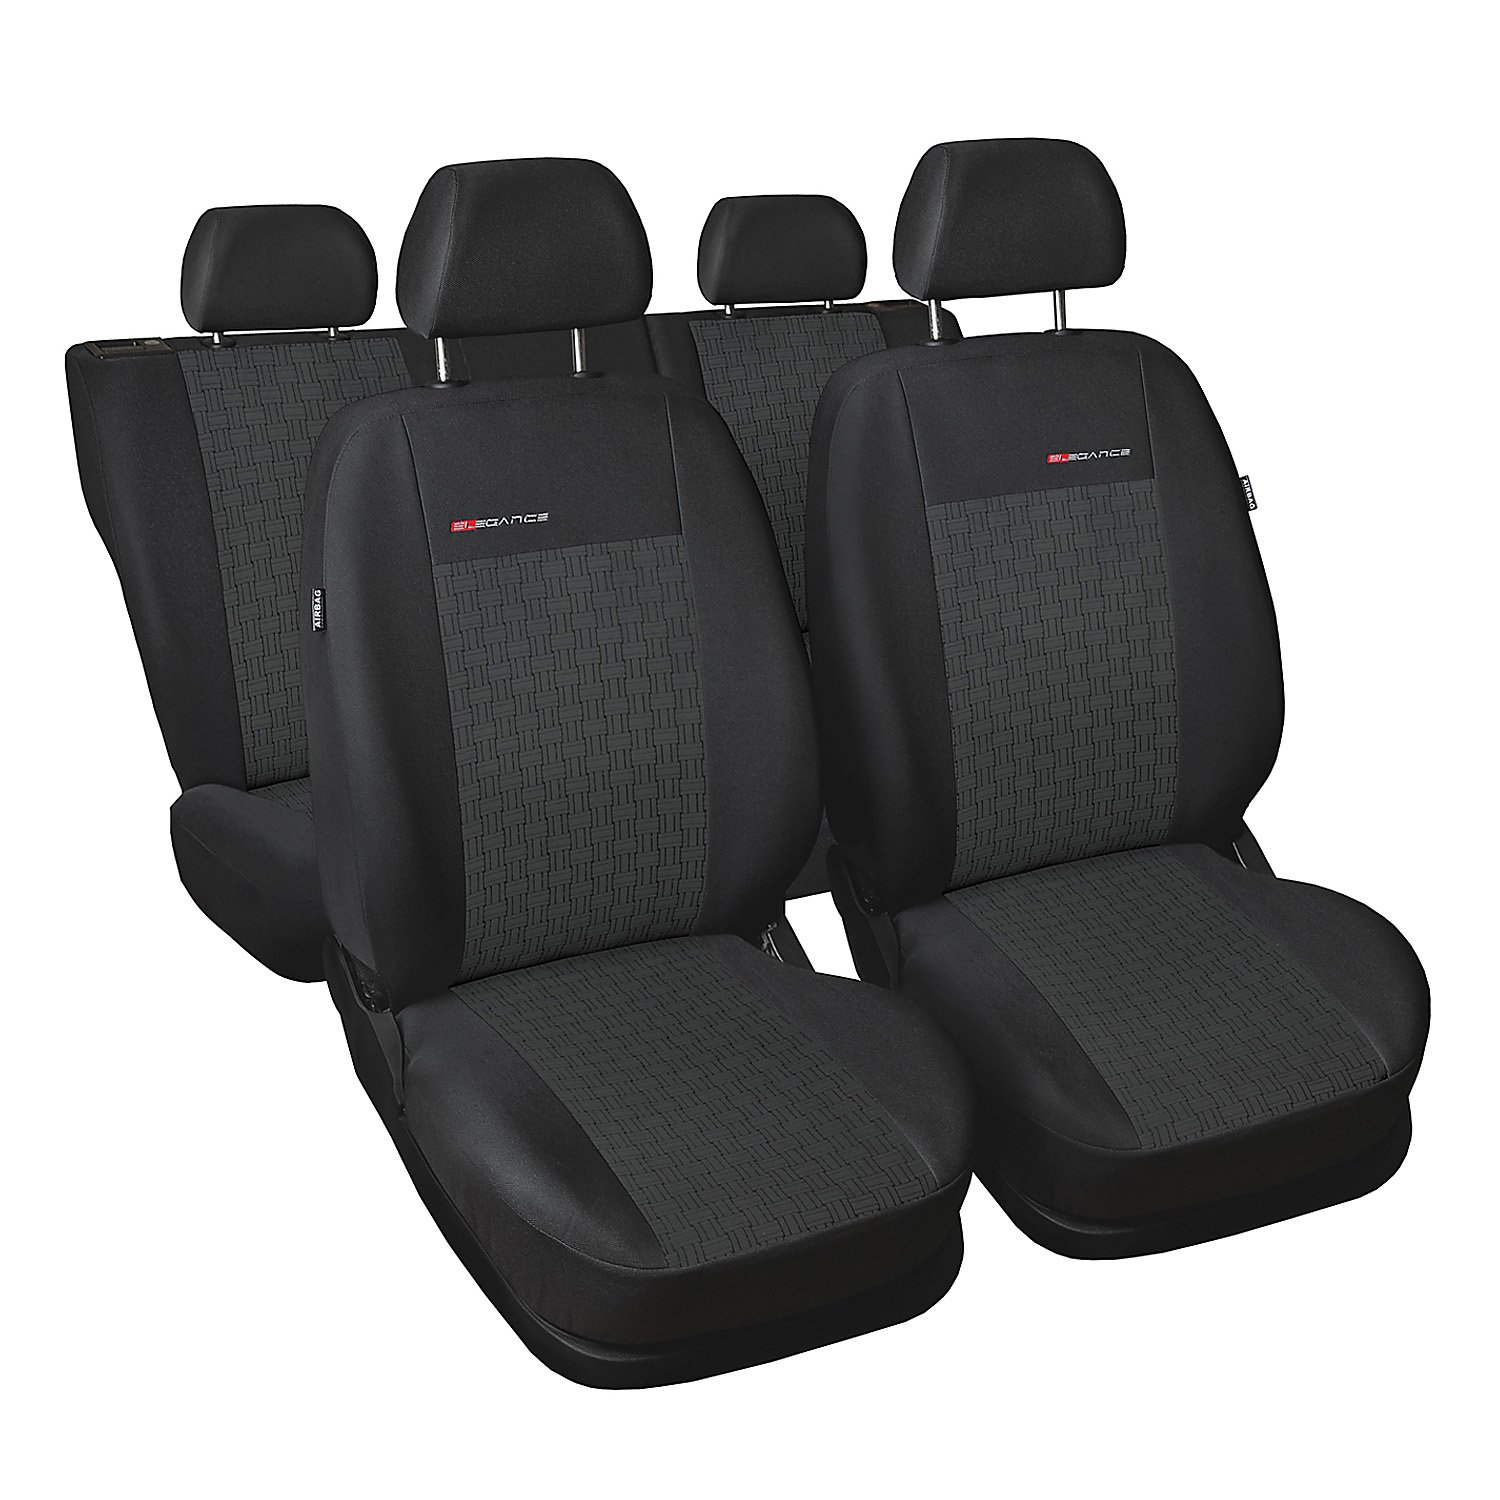 Ford Mondeo IV 2007-2014 Maßgefertigte Sitzbezüge Sitzbezug Schonbezüge Sitzschoner